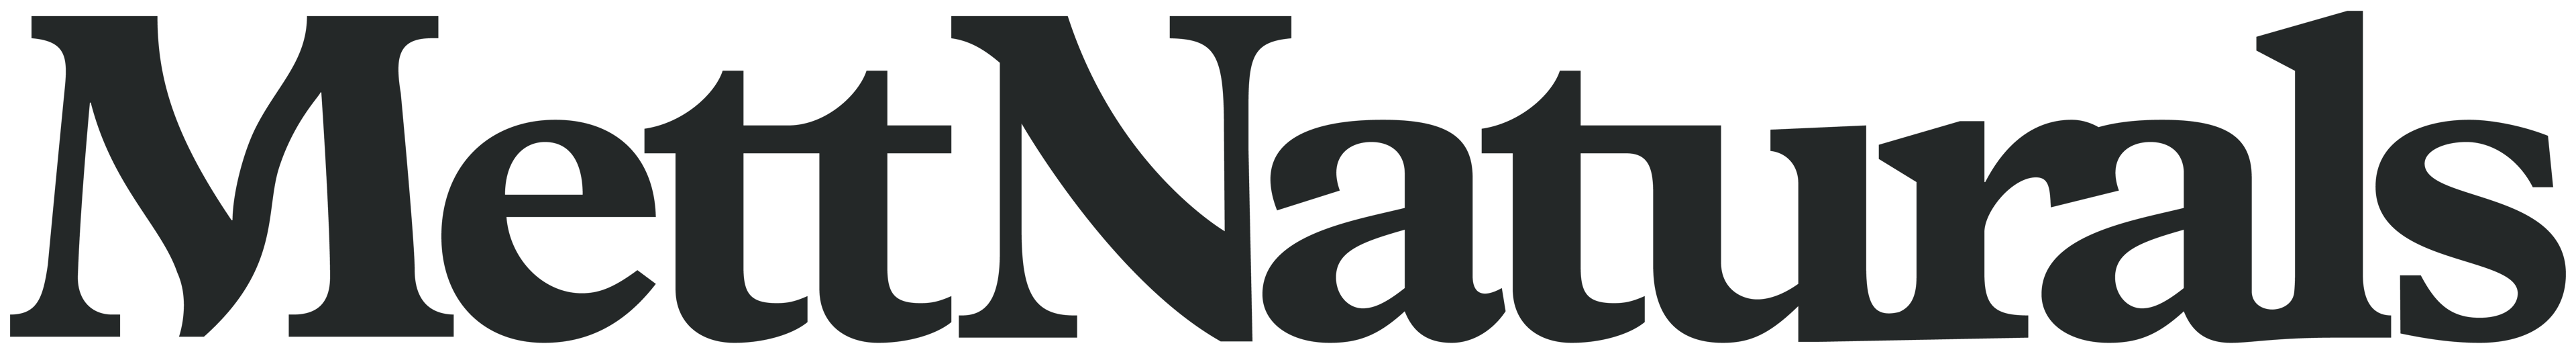 Mett Naturals logo